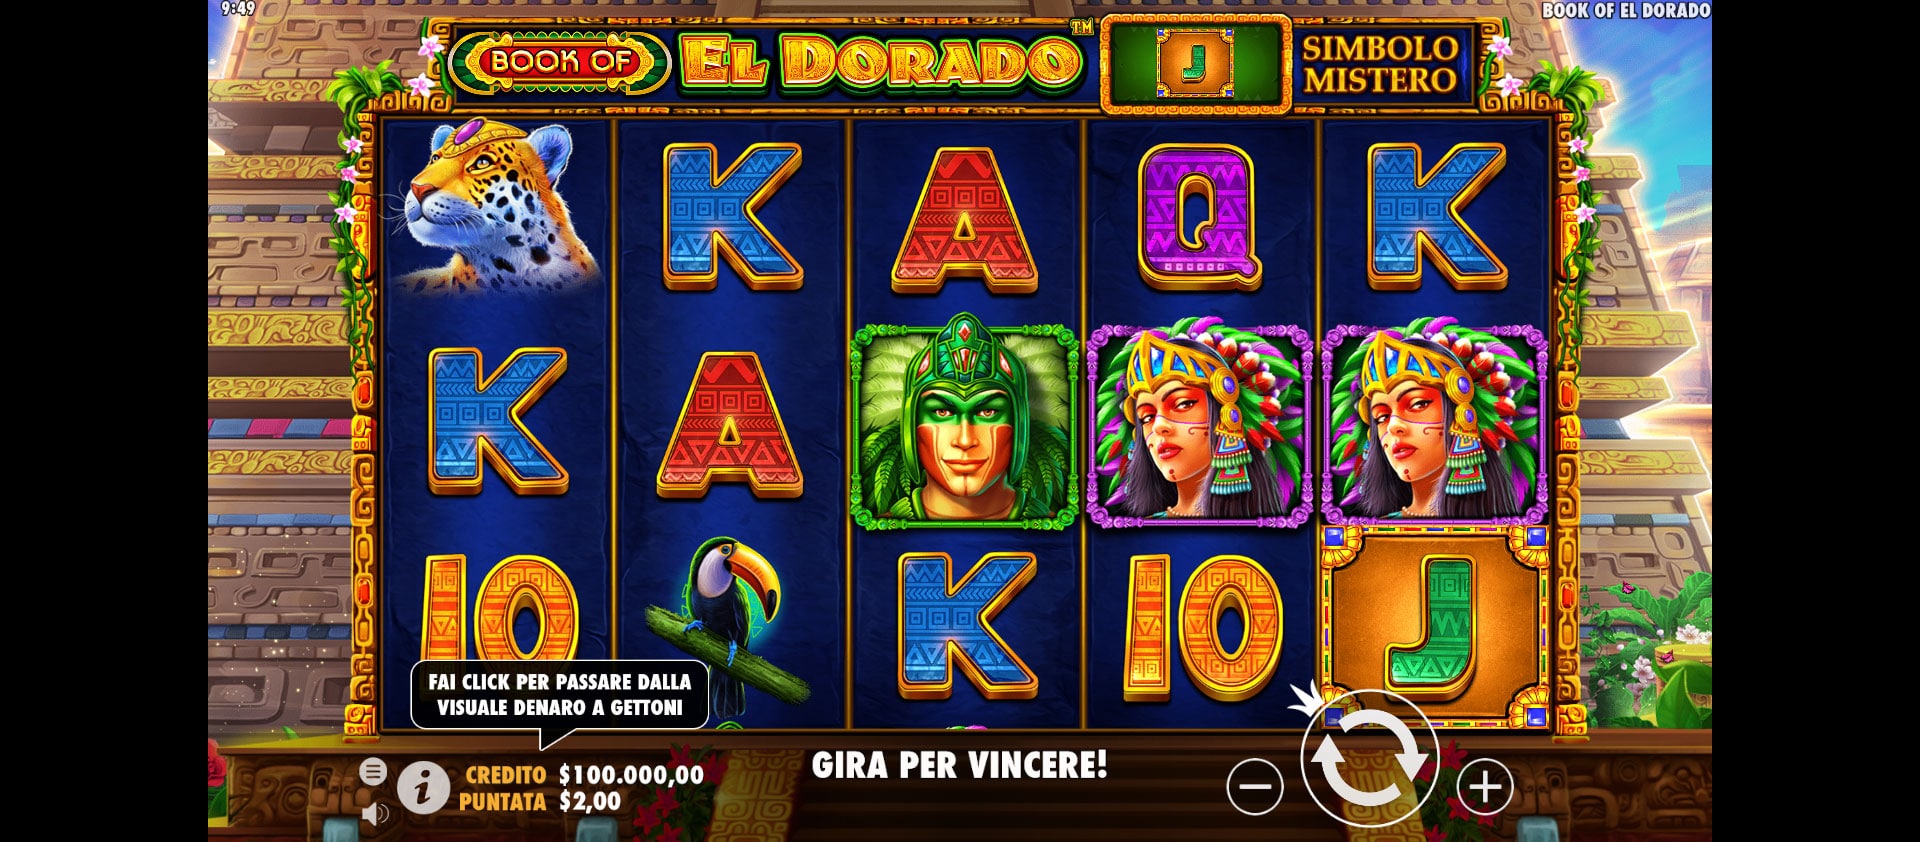 schermata del gioco slot machine book of eldorado